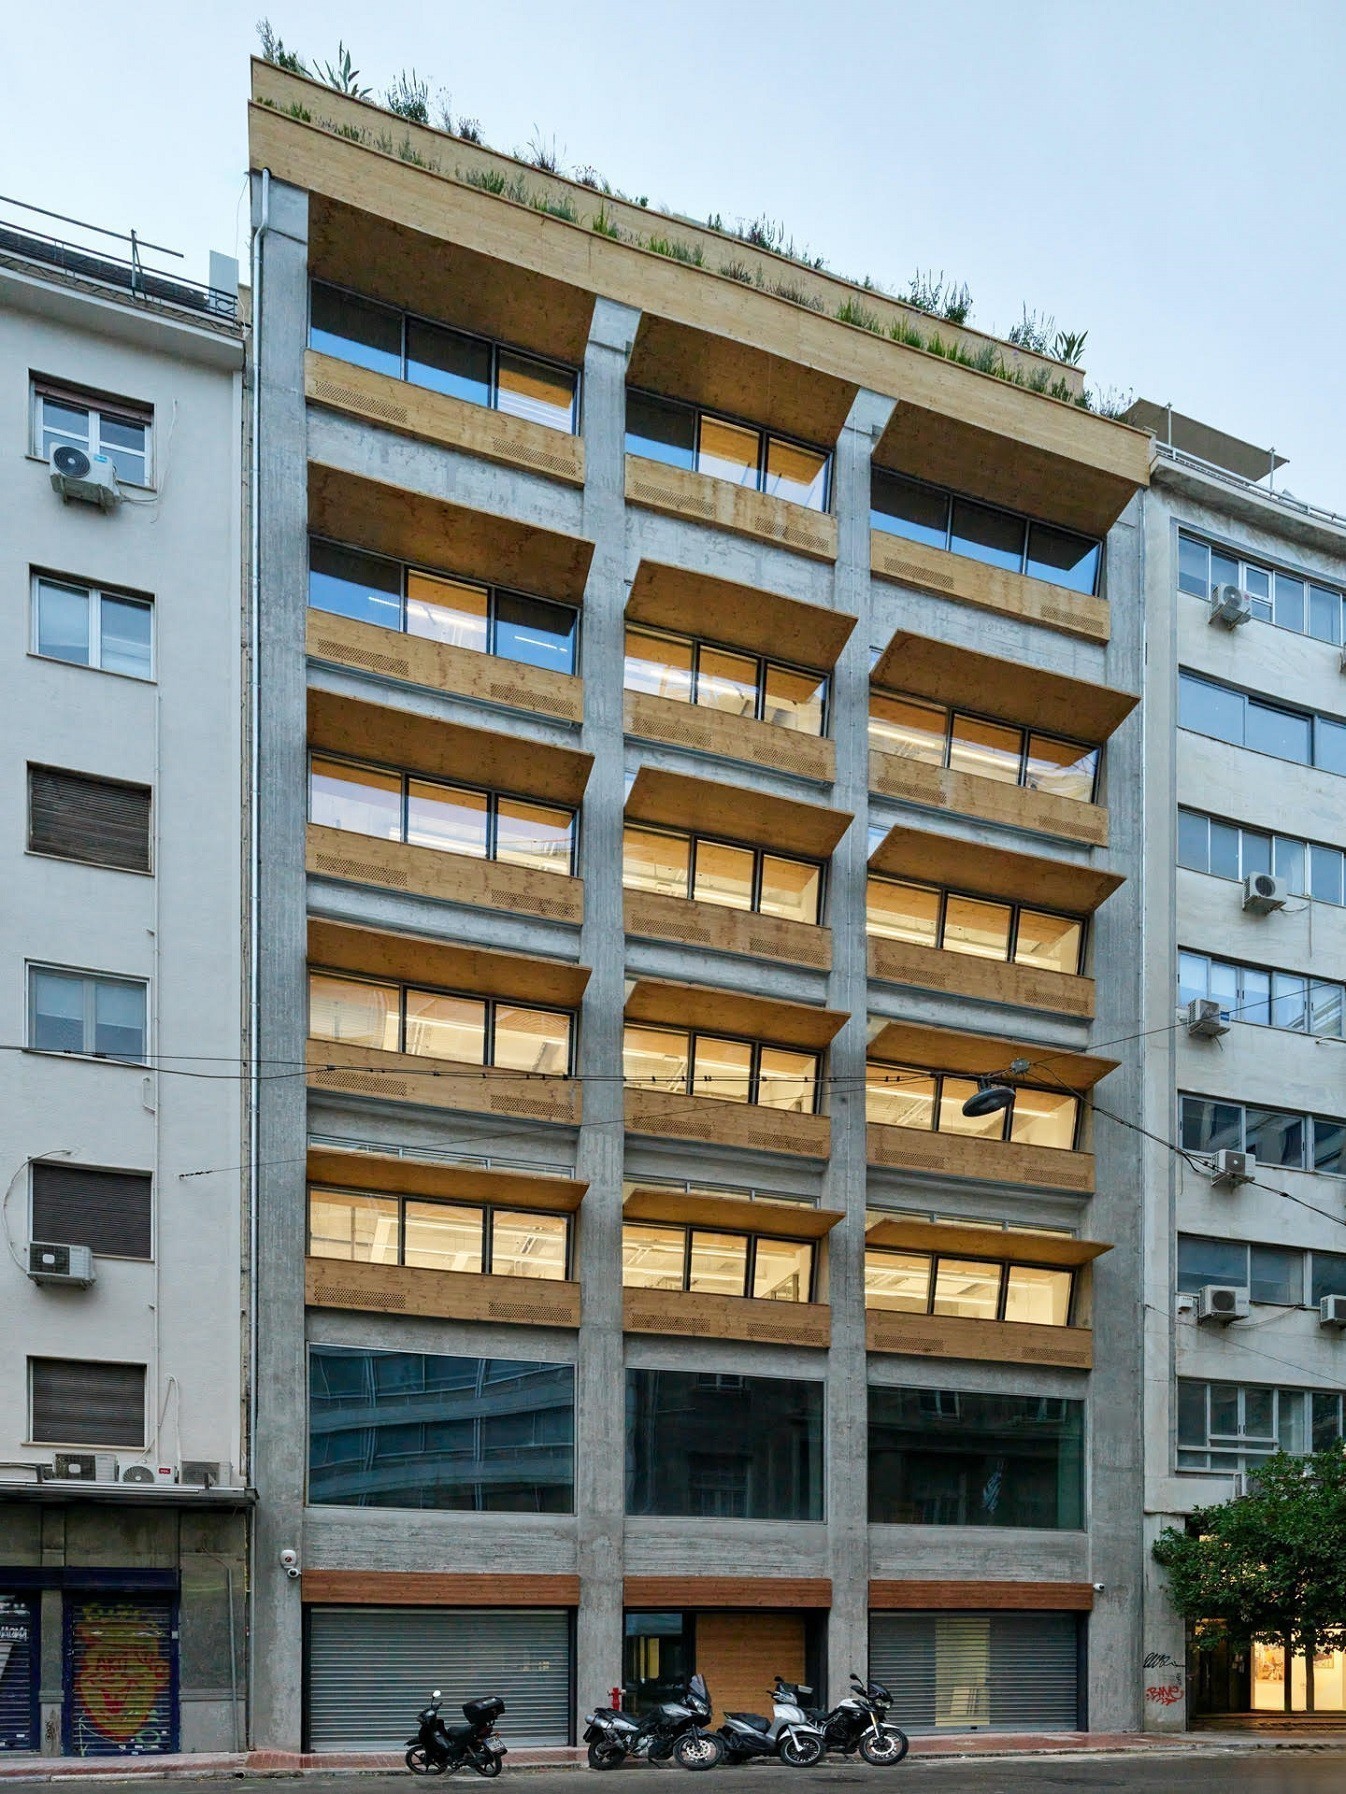 Επένδυση €8,5 εκατ. για το ιστορικό κτίριο του ΔΟΛ στη Χρήστου Λαδά – Η ανάπλαση από την ehret+klein (pic)